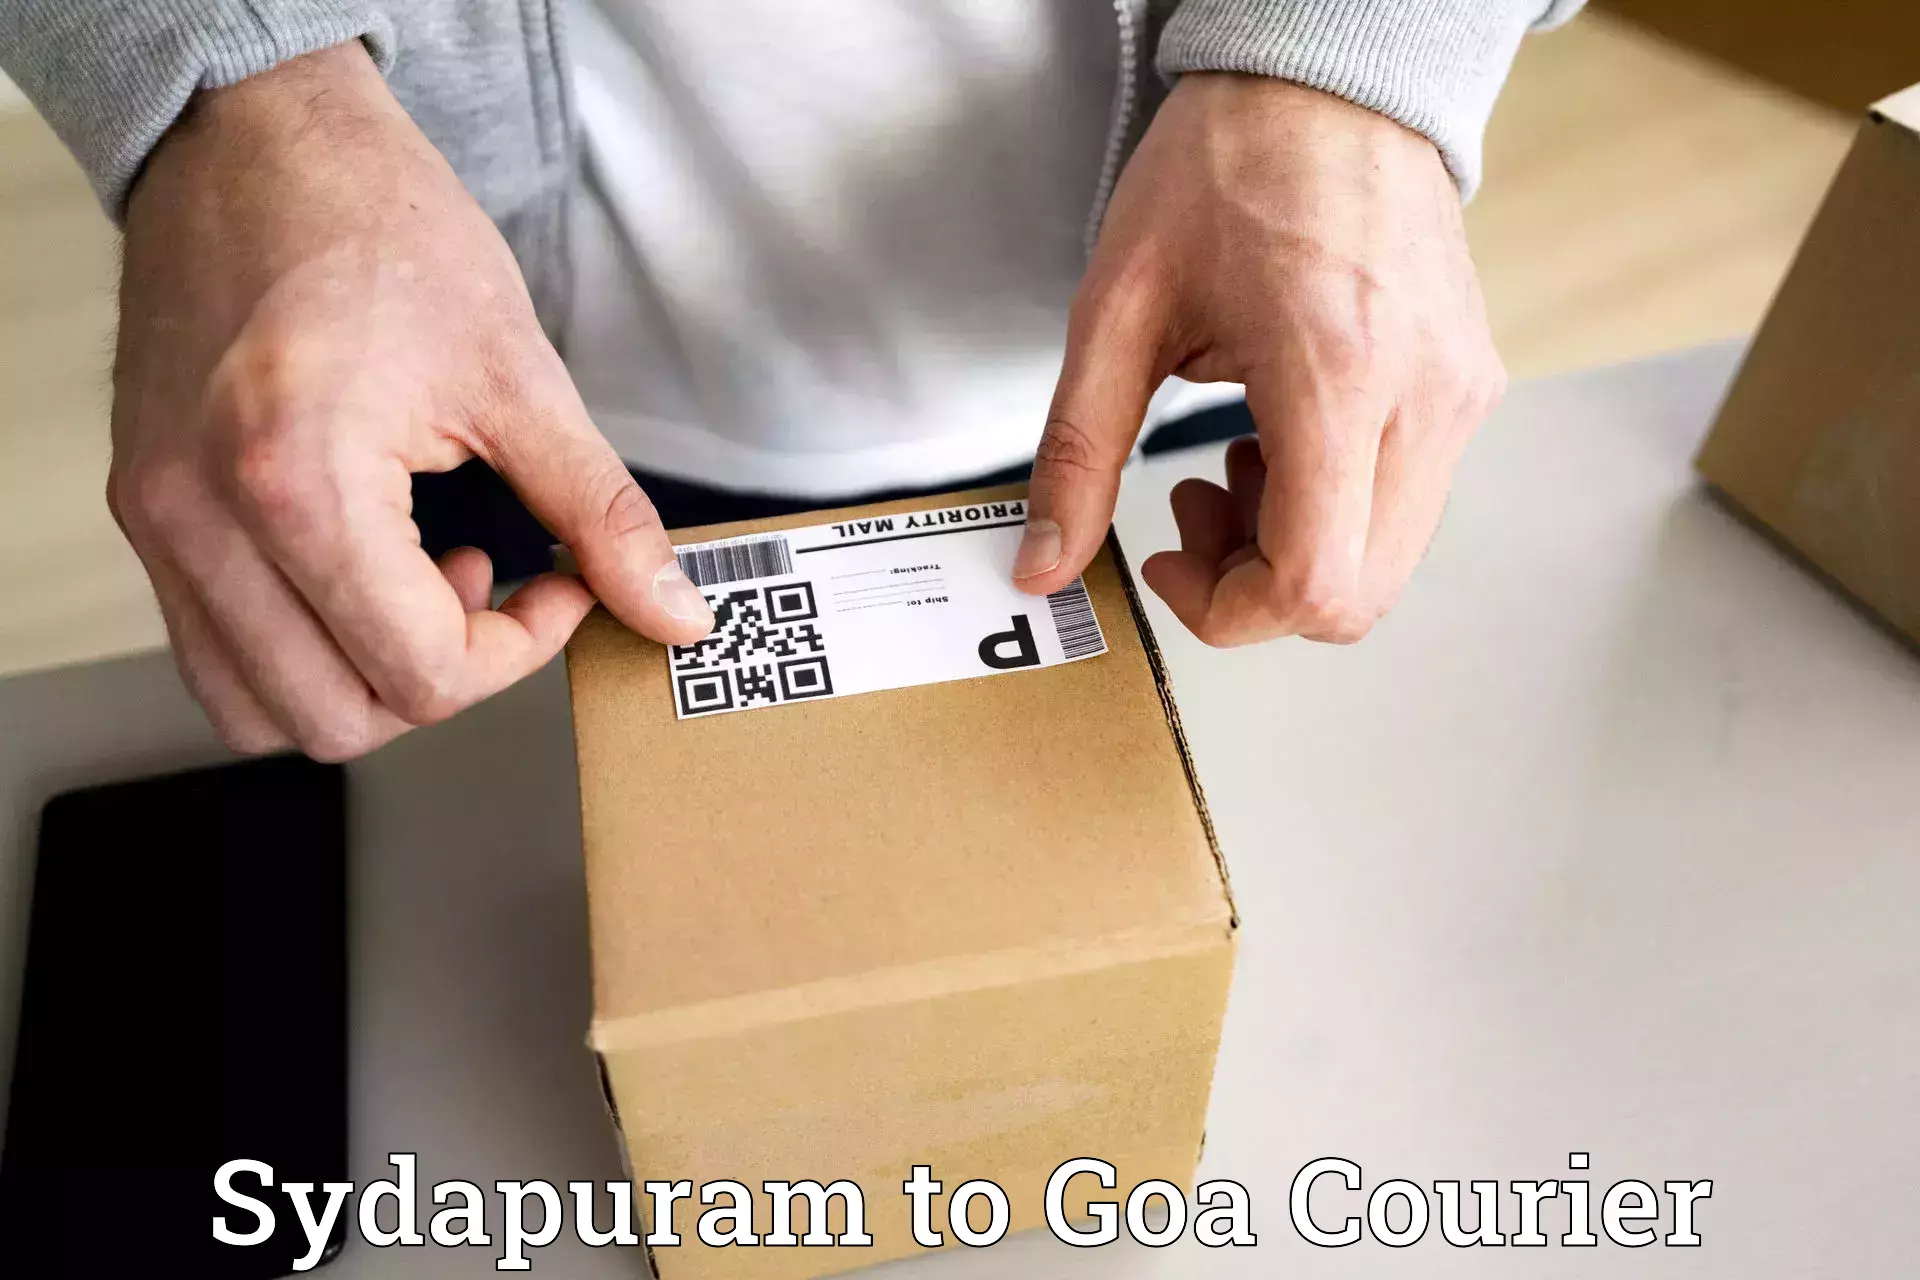 Express logistics service Sydapuram to Goa